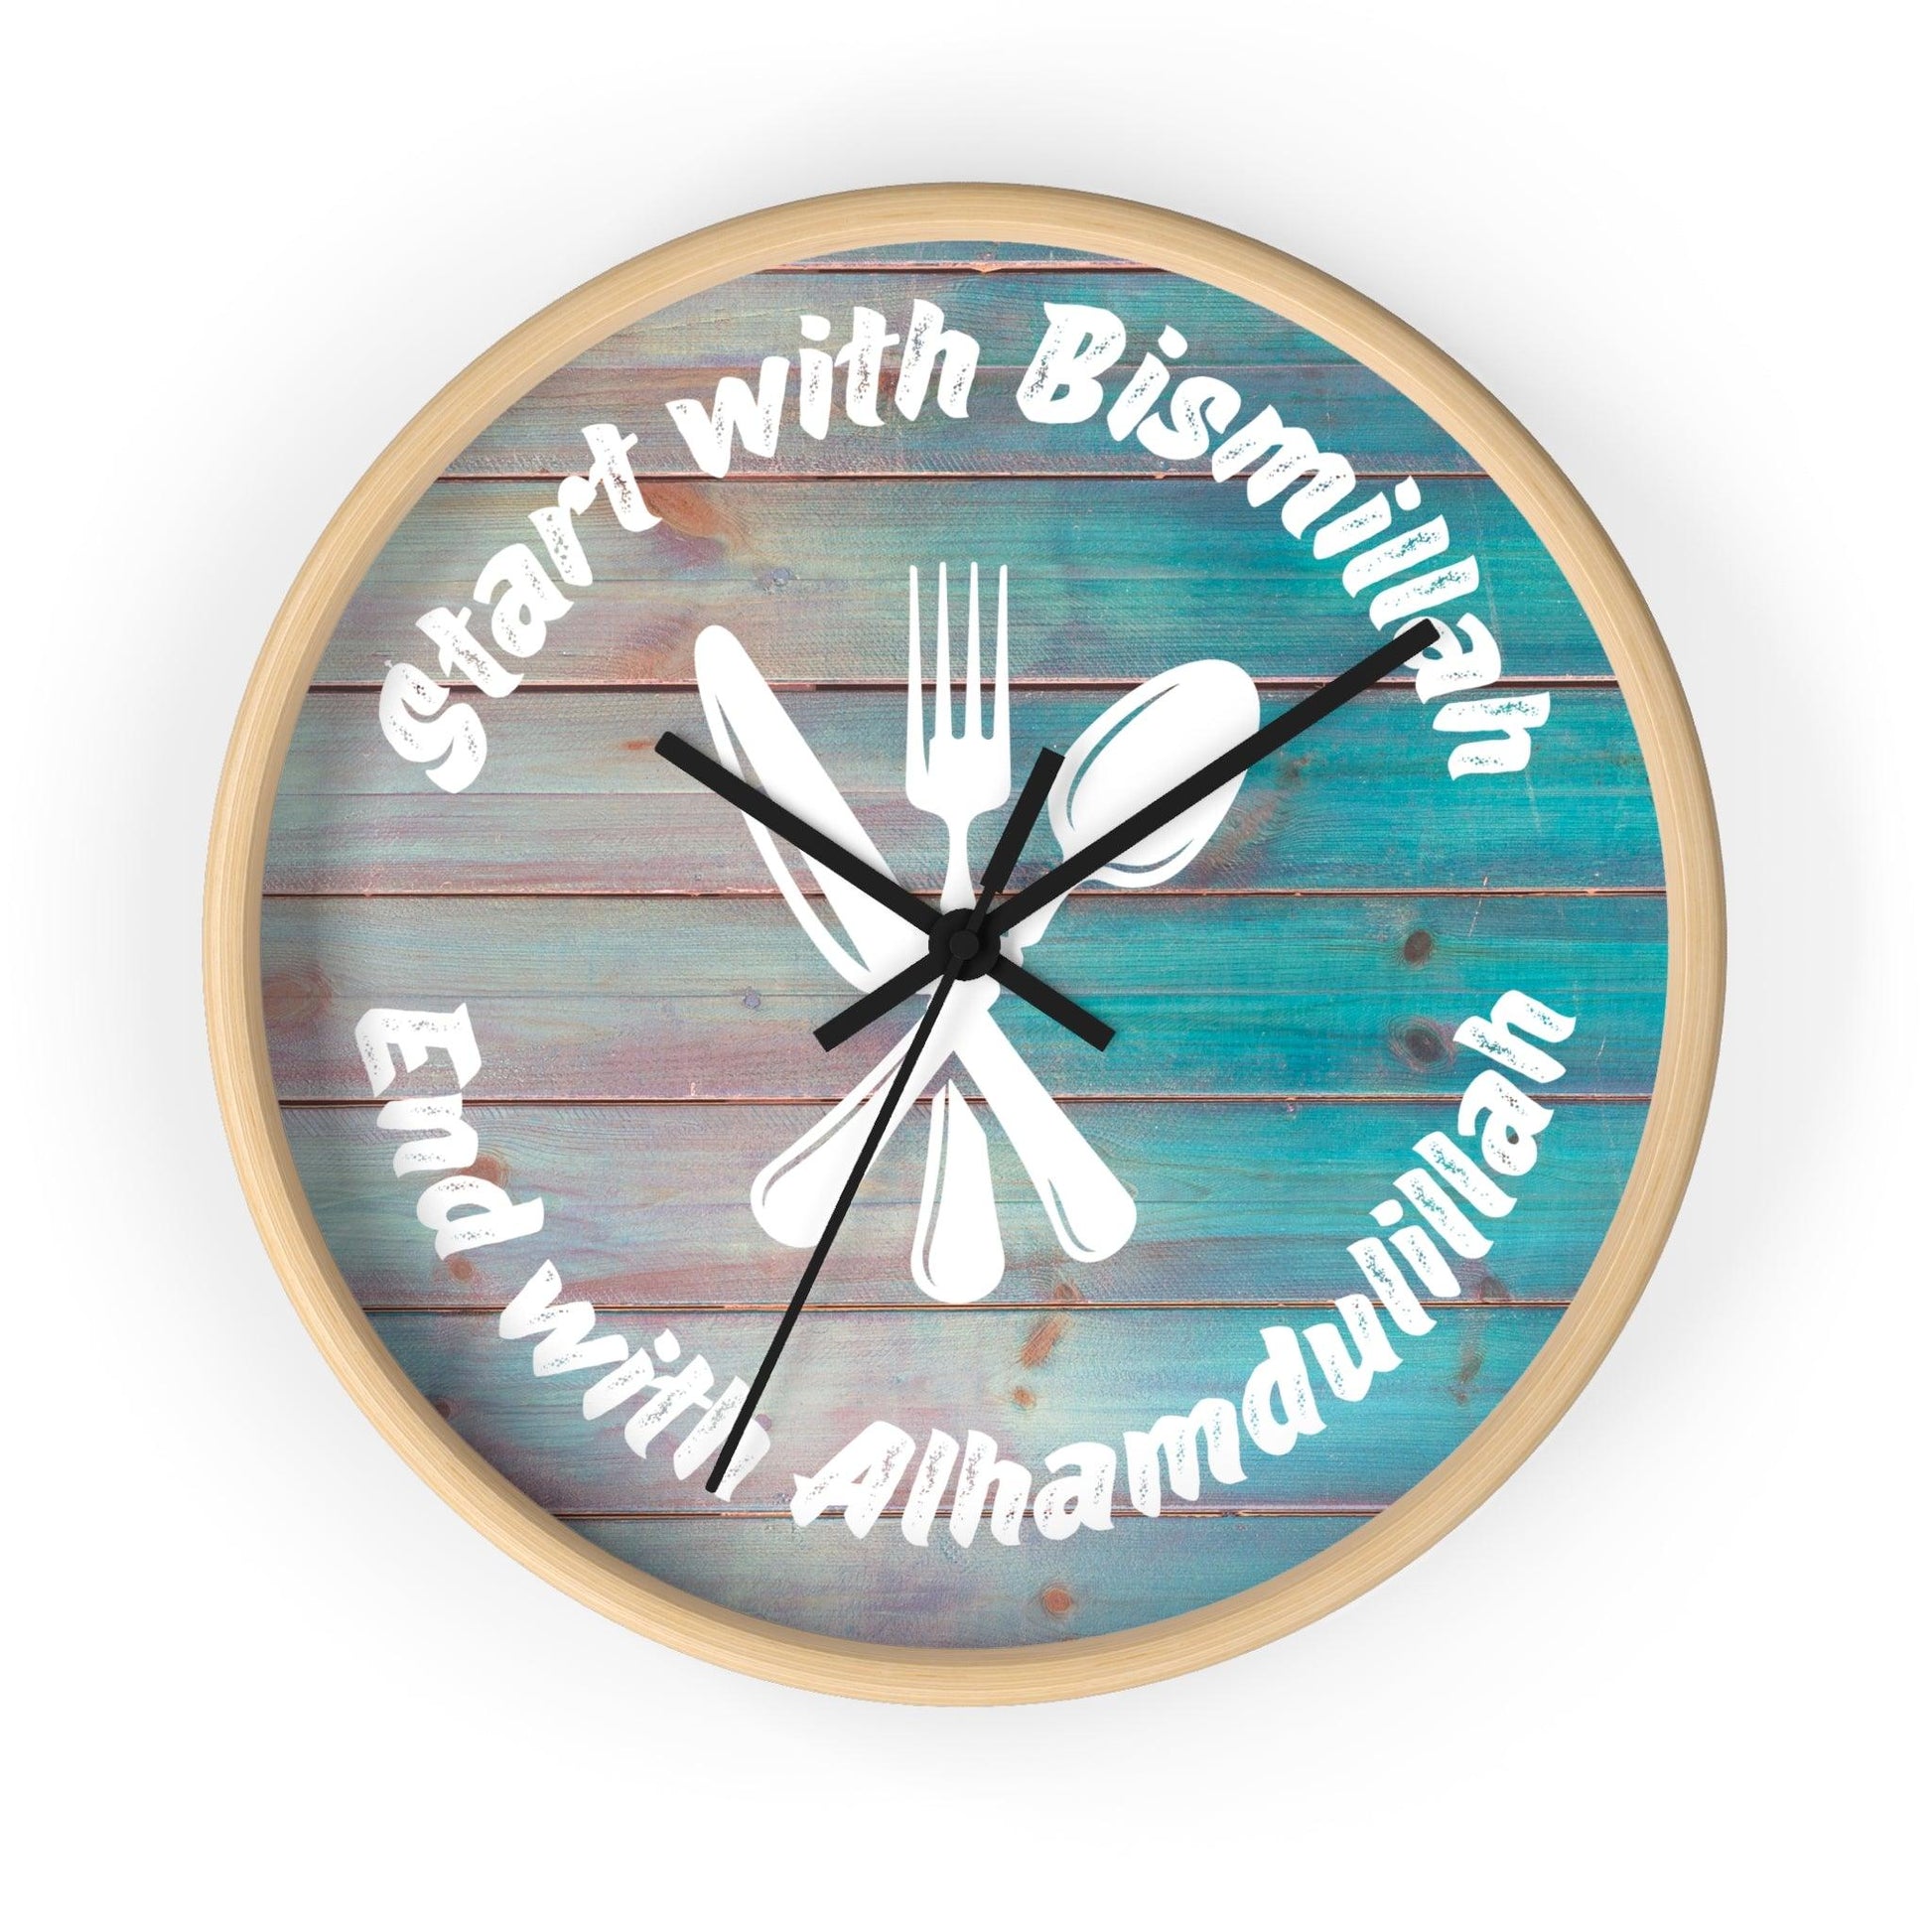 Bismillah Alhamdulillah Clock